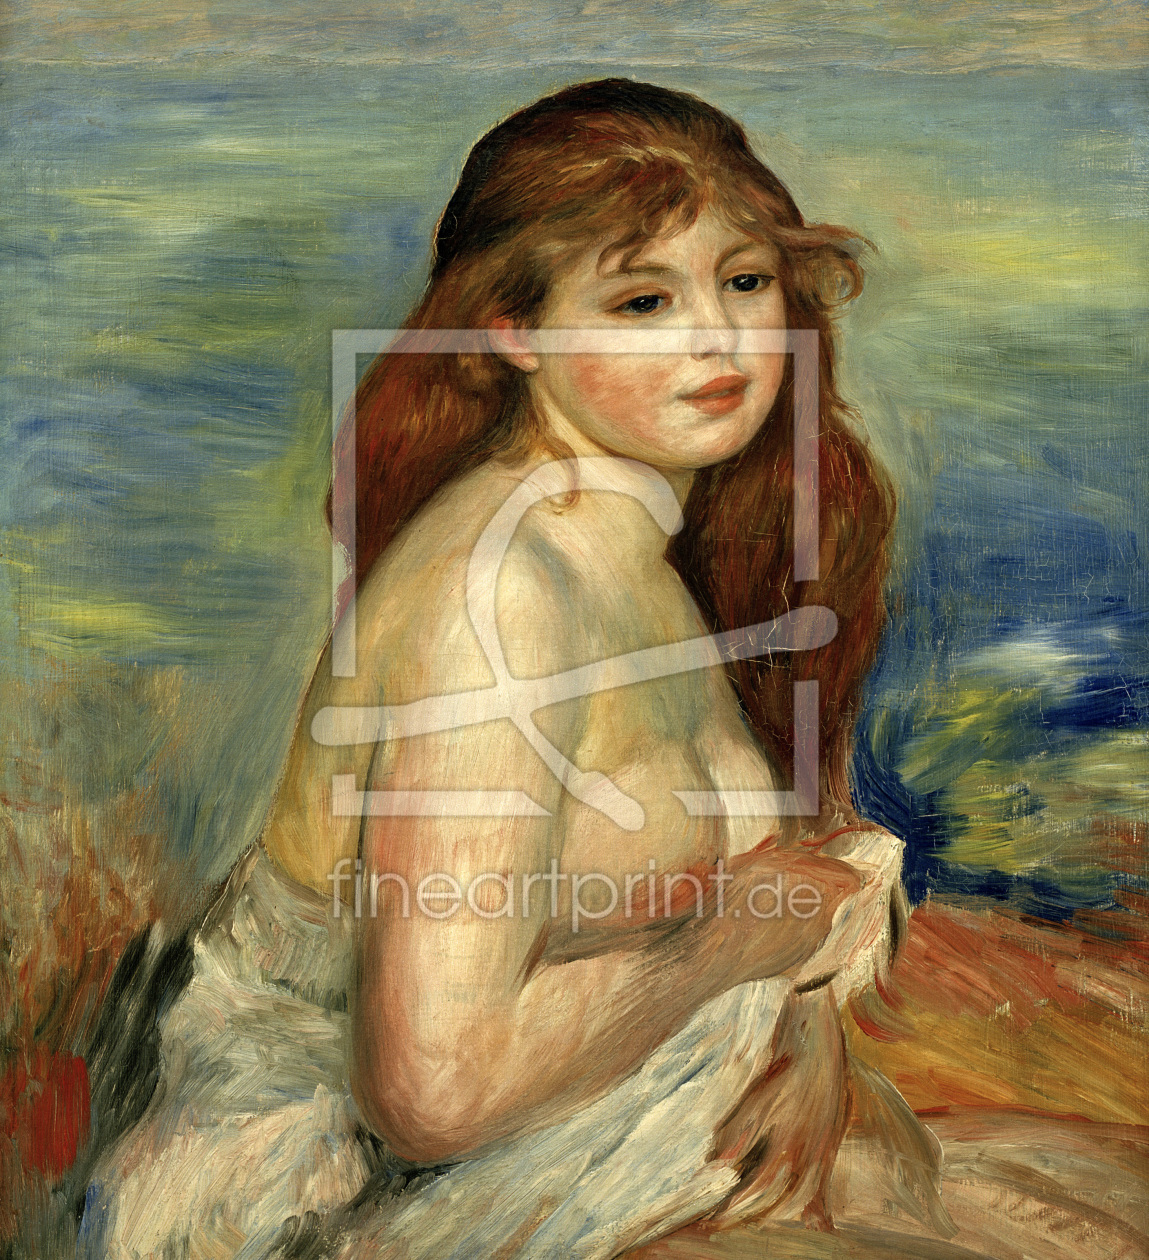 Bild-Nr.: 30006604 Renoir / Bather / 1884/85 erstellt von Renoir, Pierre-Auguste